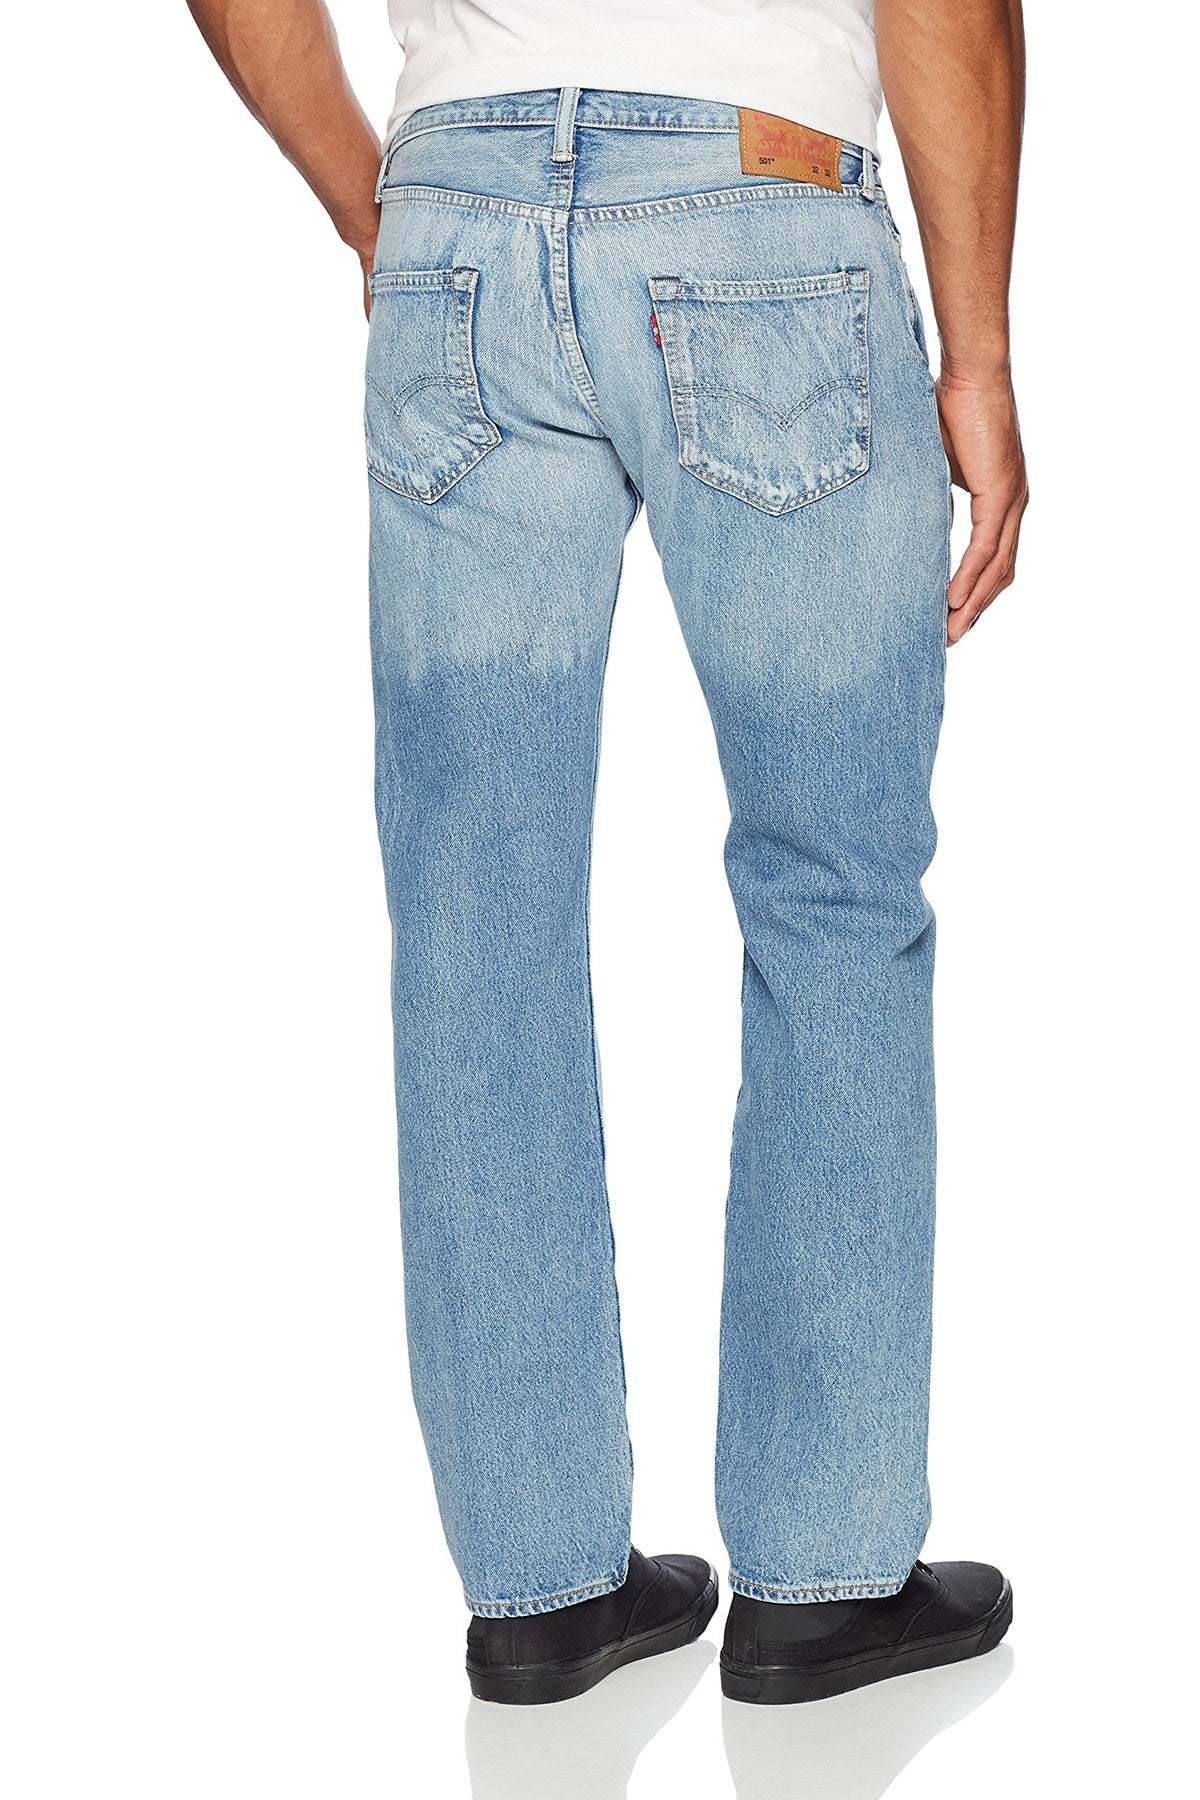 Levi's Queens Keeper 501™ Original Fit Jeans